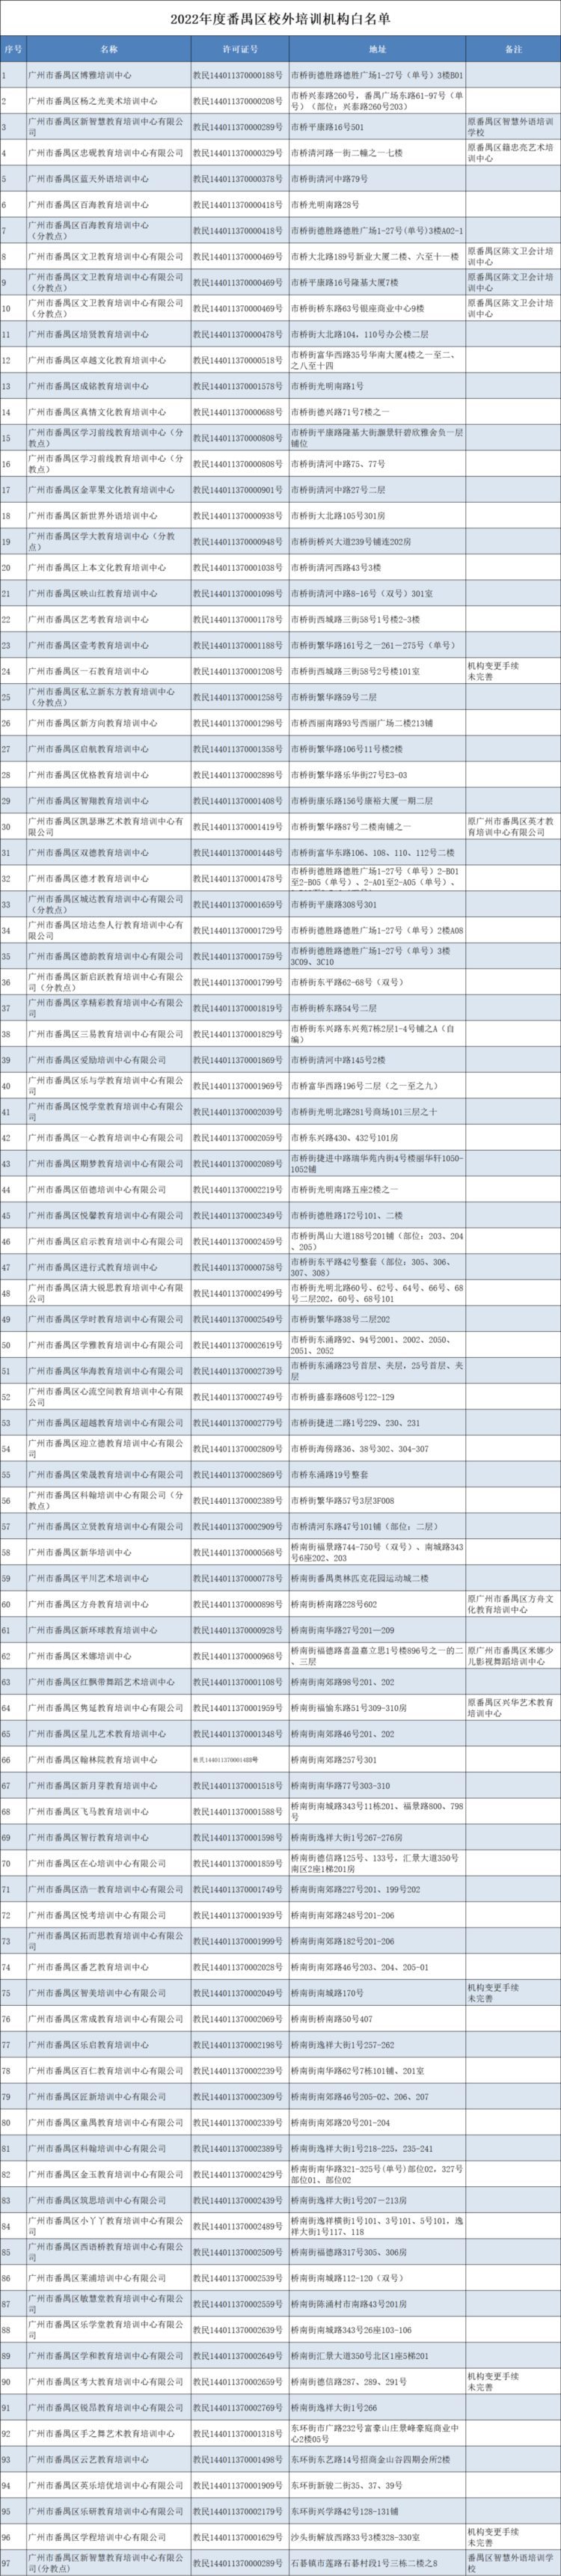 广州市番禺区公布29家校外培训机构黑名单